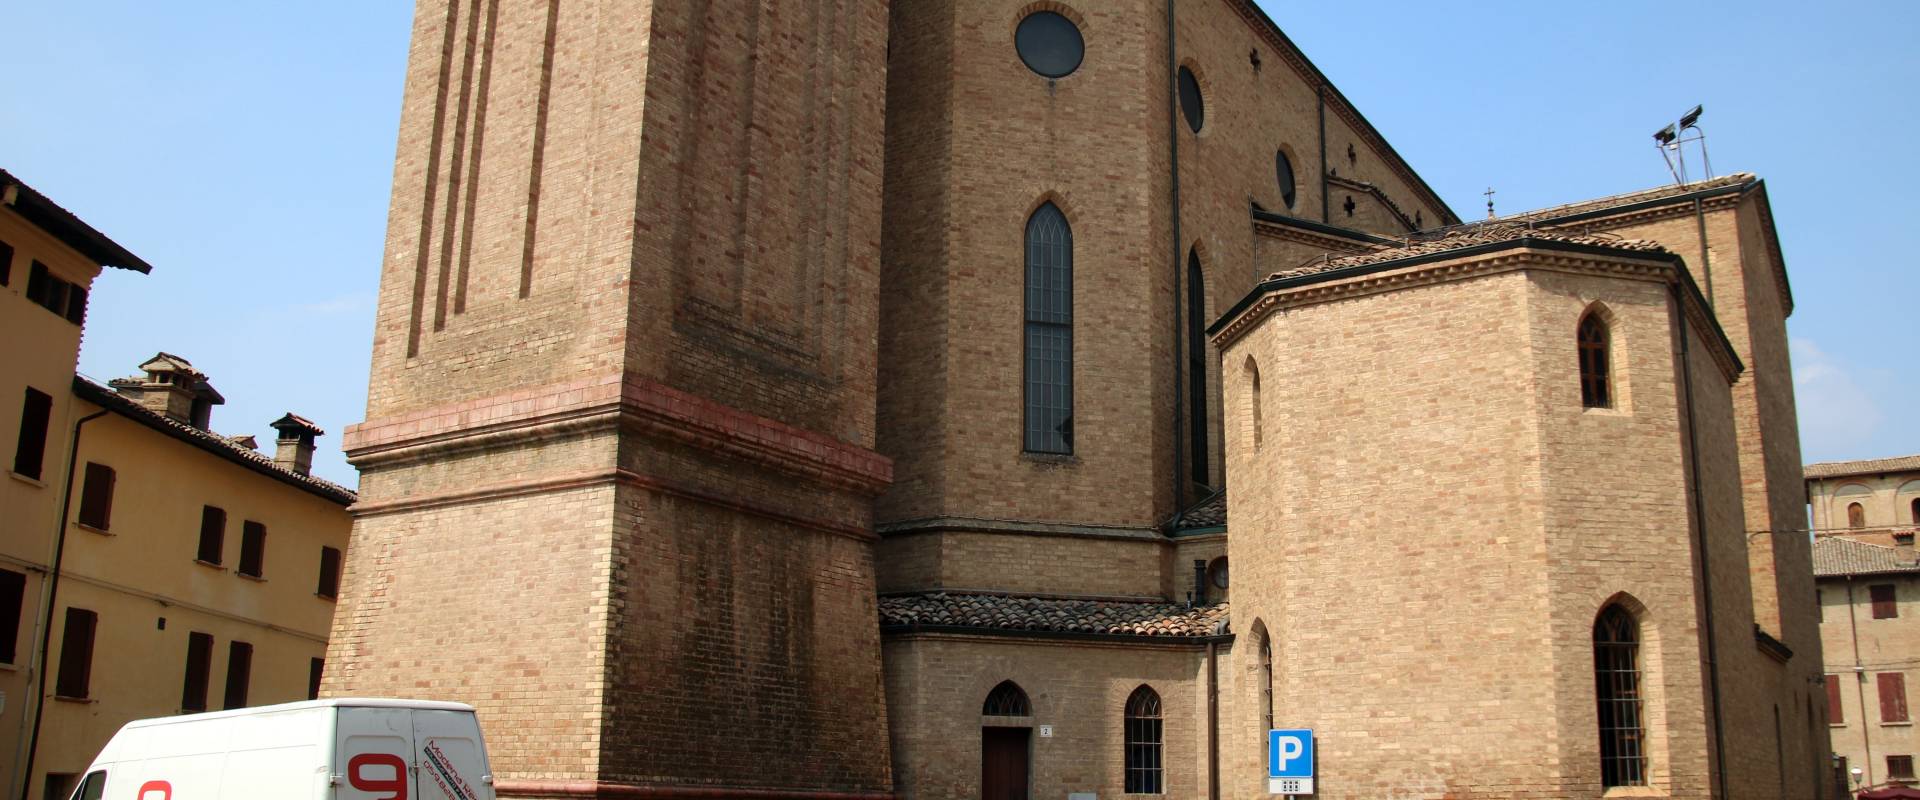 Chiesa dei Santi Senesio e Teopompo (Castelvetro di Modena) 02 photo by Mongolo1984